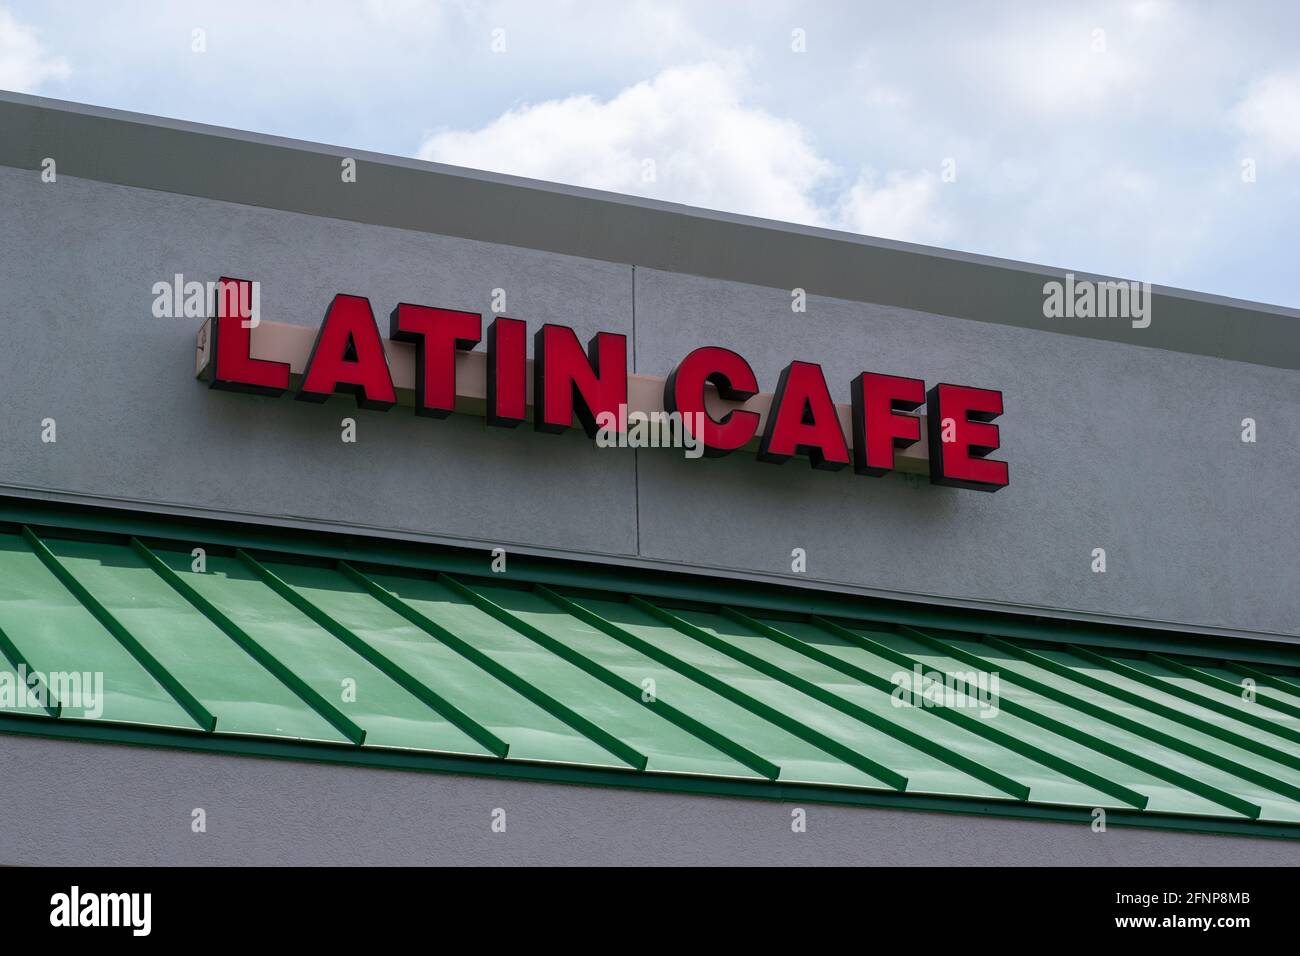 Generisches Latin Cafe Schild in einem Shopping plaza. Rotes Schild mit großen Buchstaben und Beleuchtung für gute Sicht bei Nacht. Stockfoto